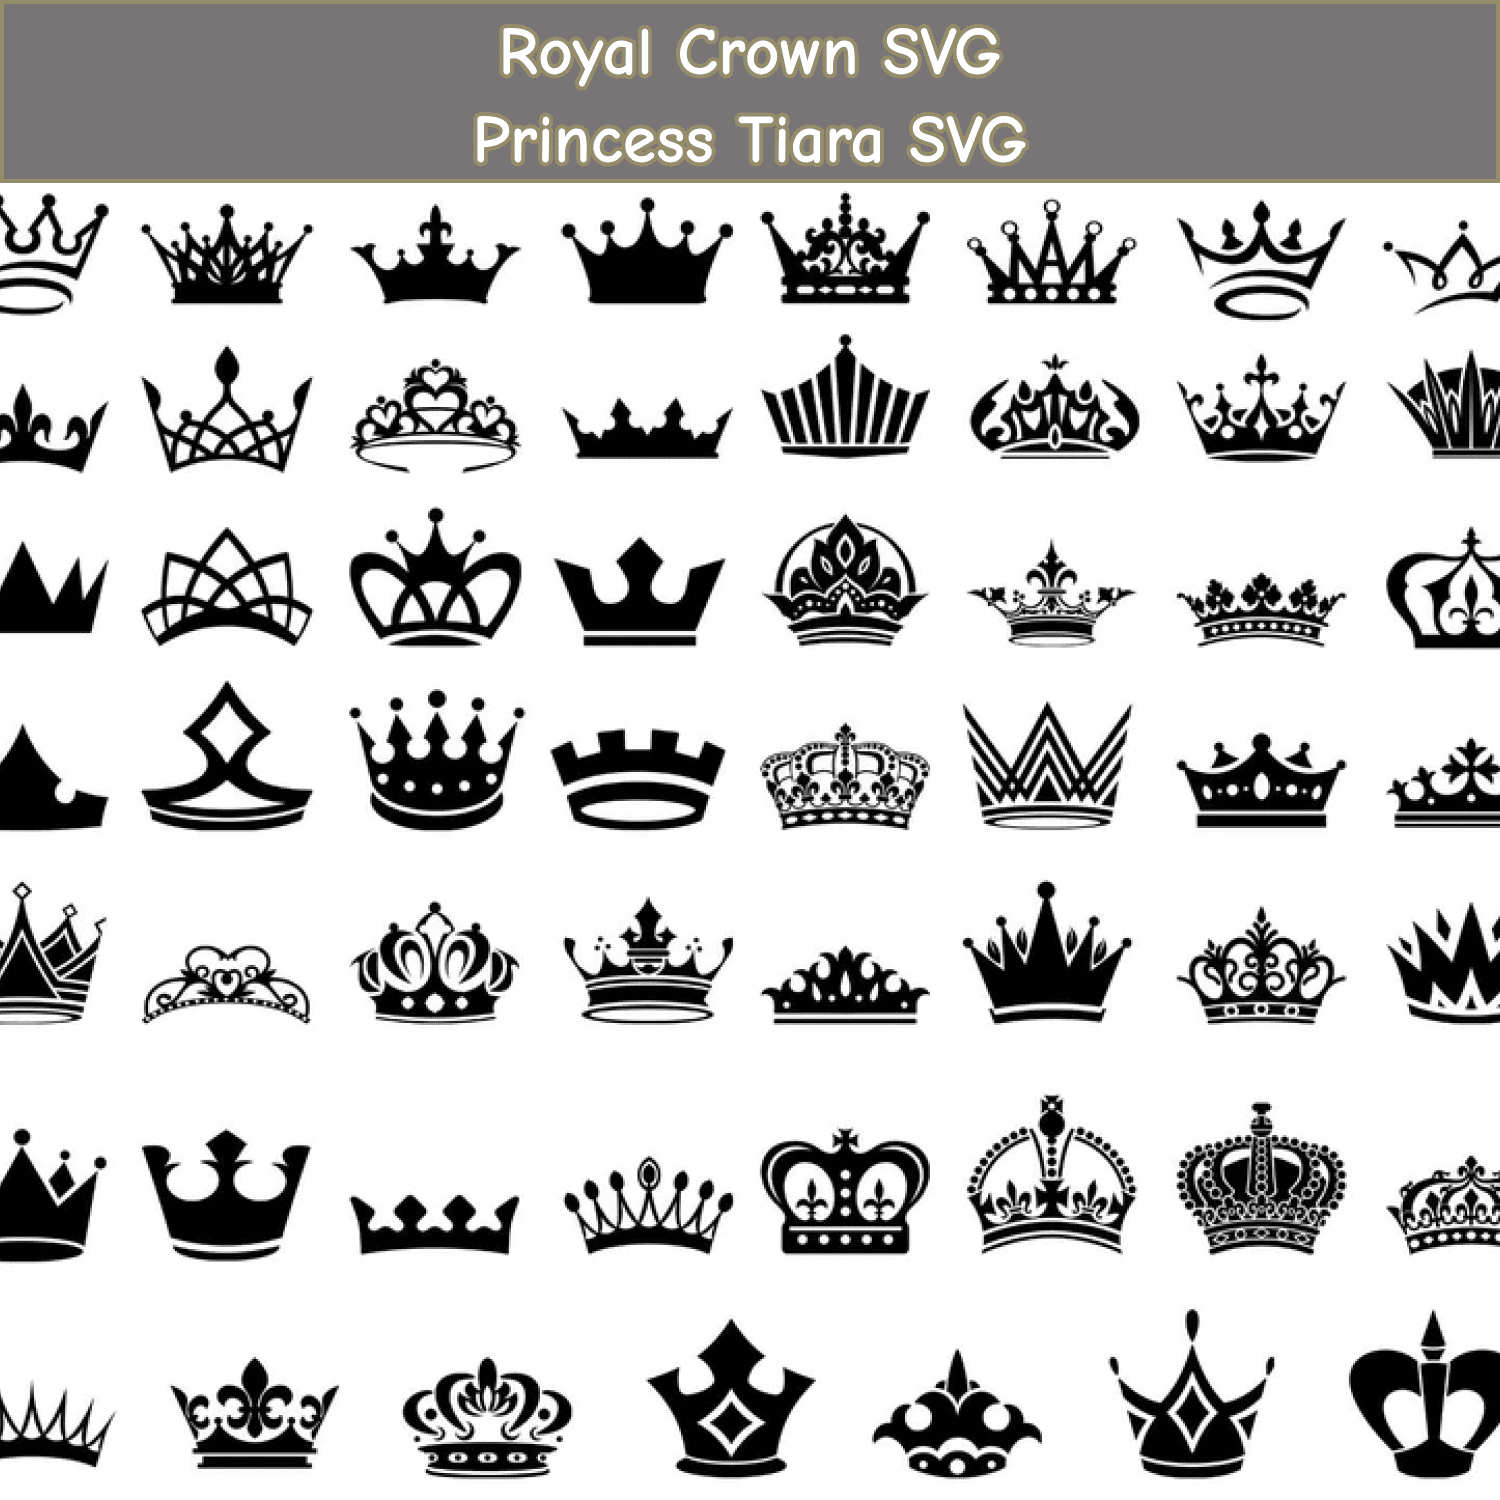 Queen Crown SVG Files.